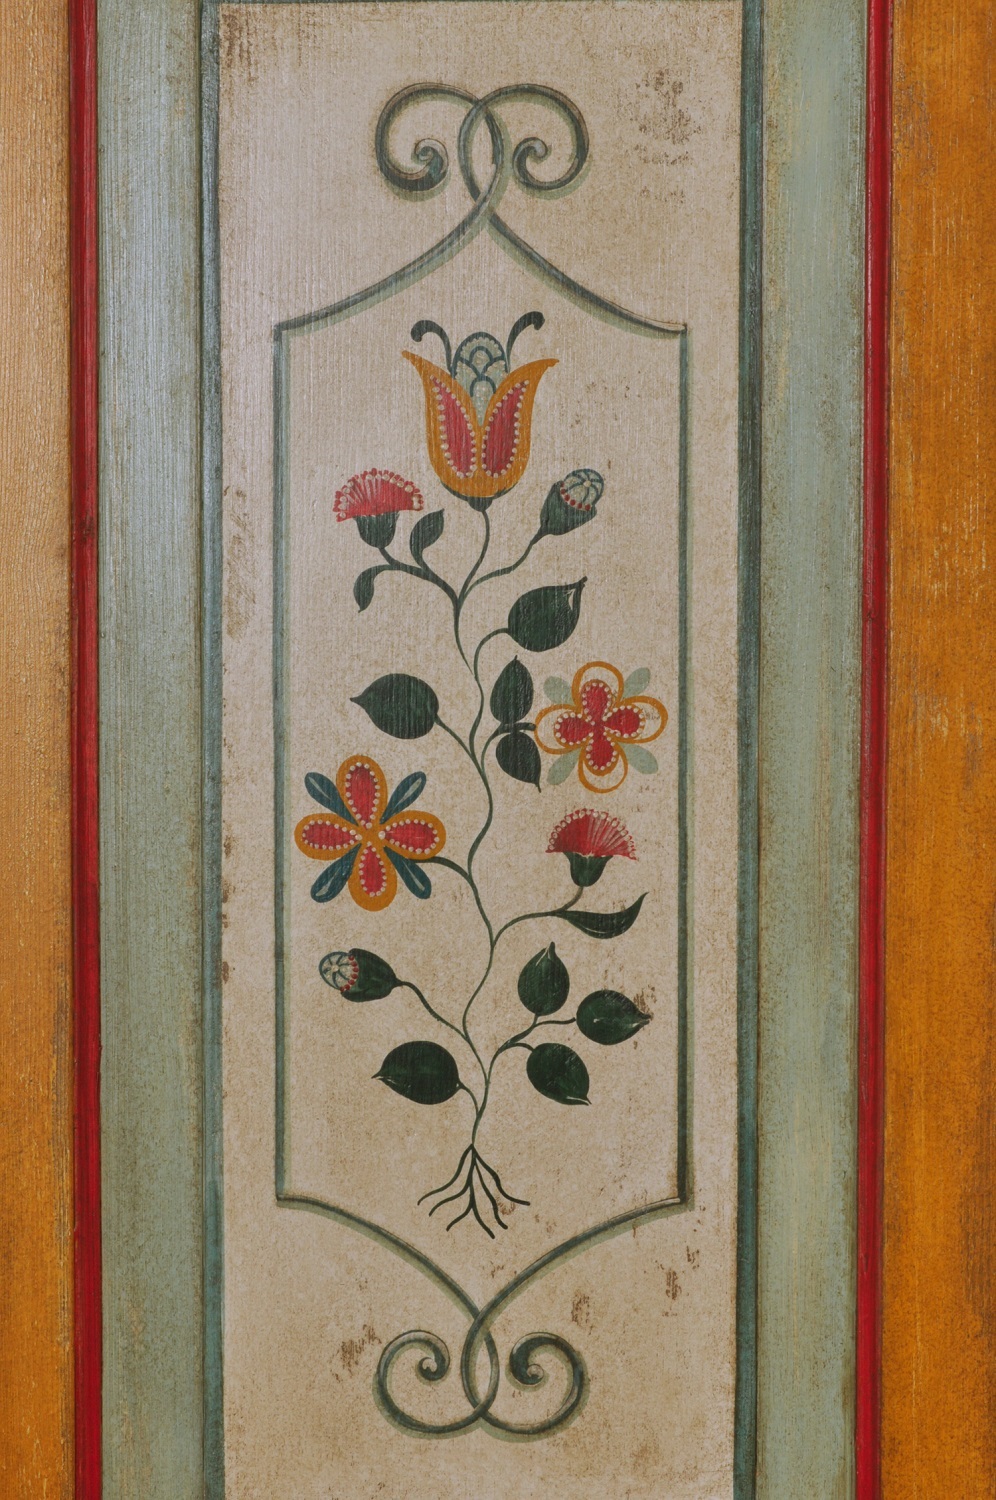 nel laboratorio di alta ebanisteria Vangelista mobili è prodotto l’angolare decorato a mano con barocchi e fiori stilizzati arredo ad angolo made in Italy